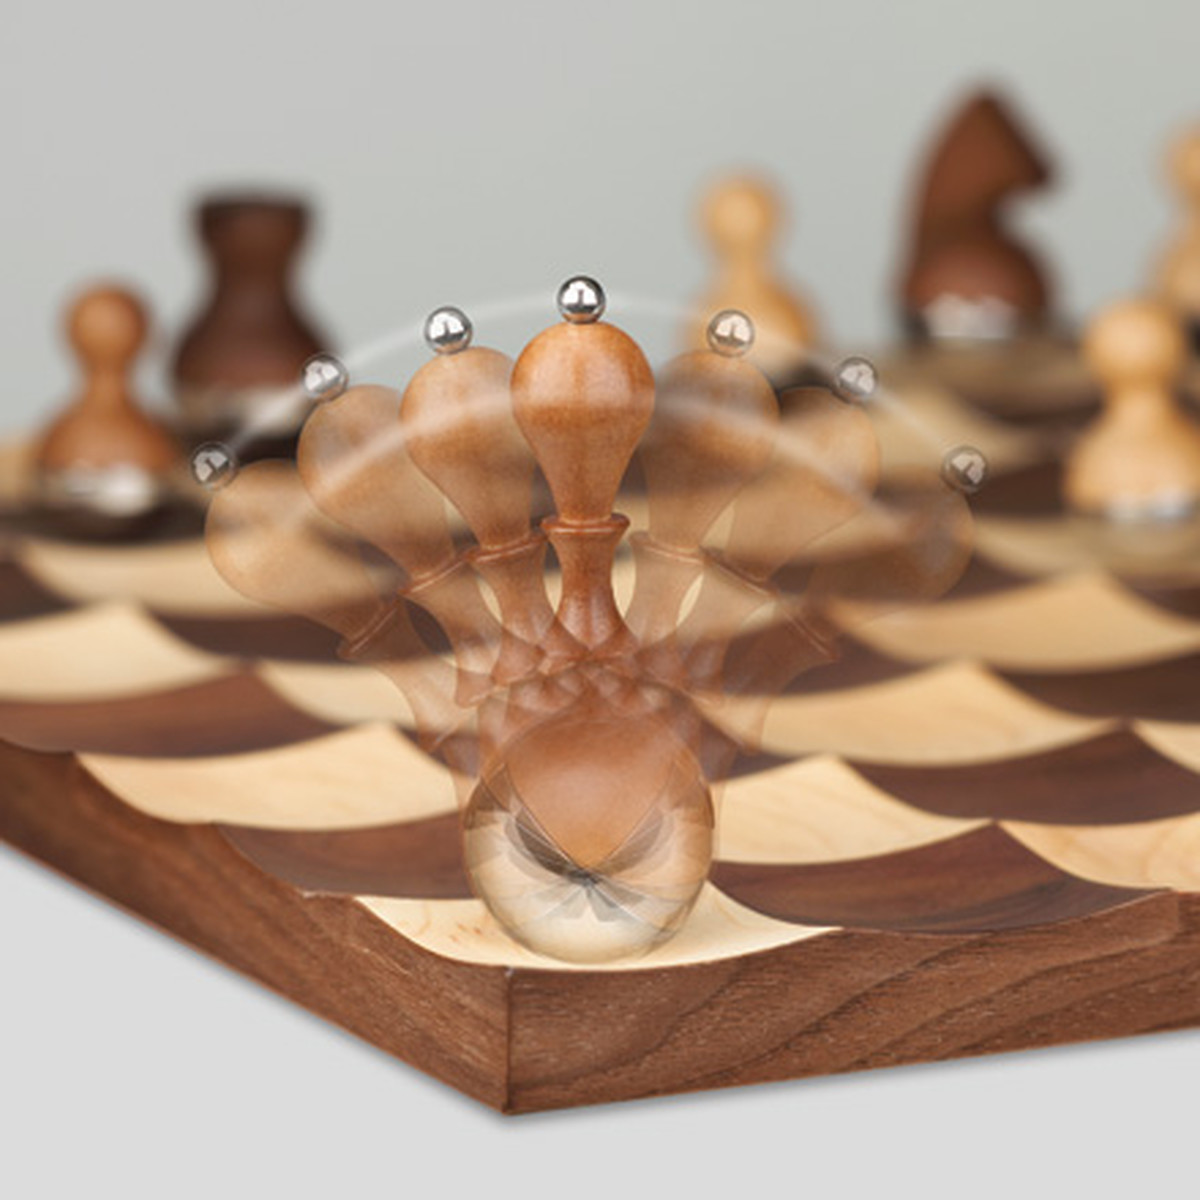 Bộ cờ vua độc đáo Umbra Wobble Chess Set